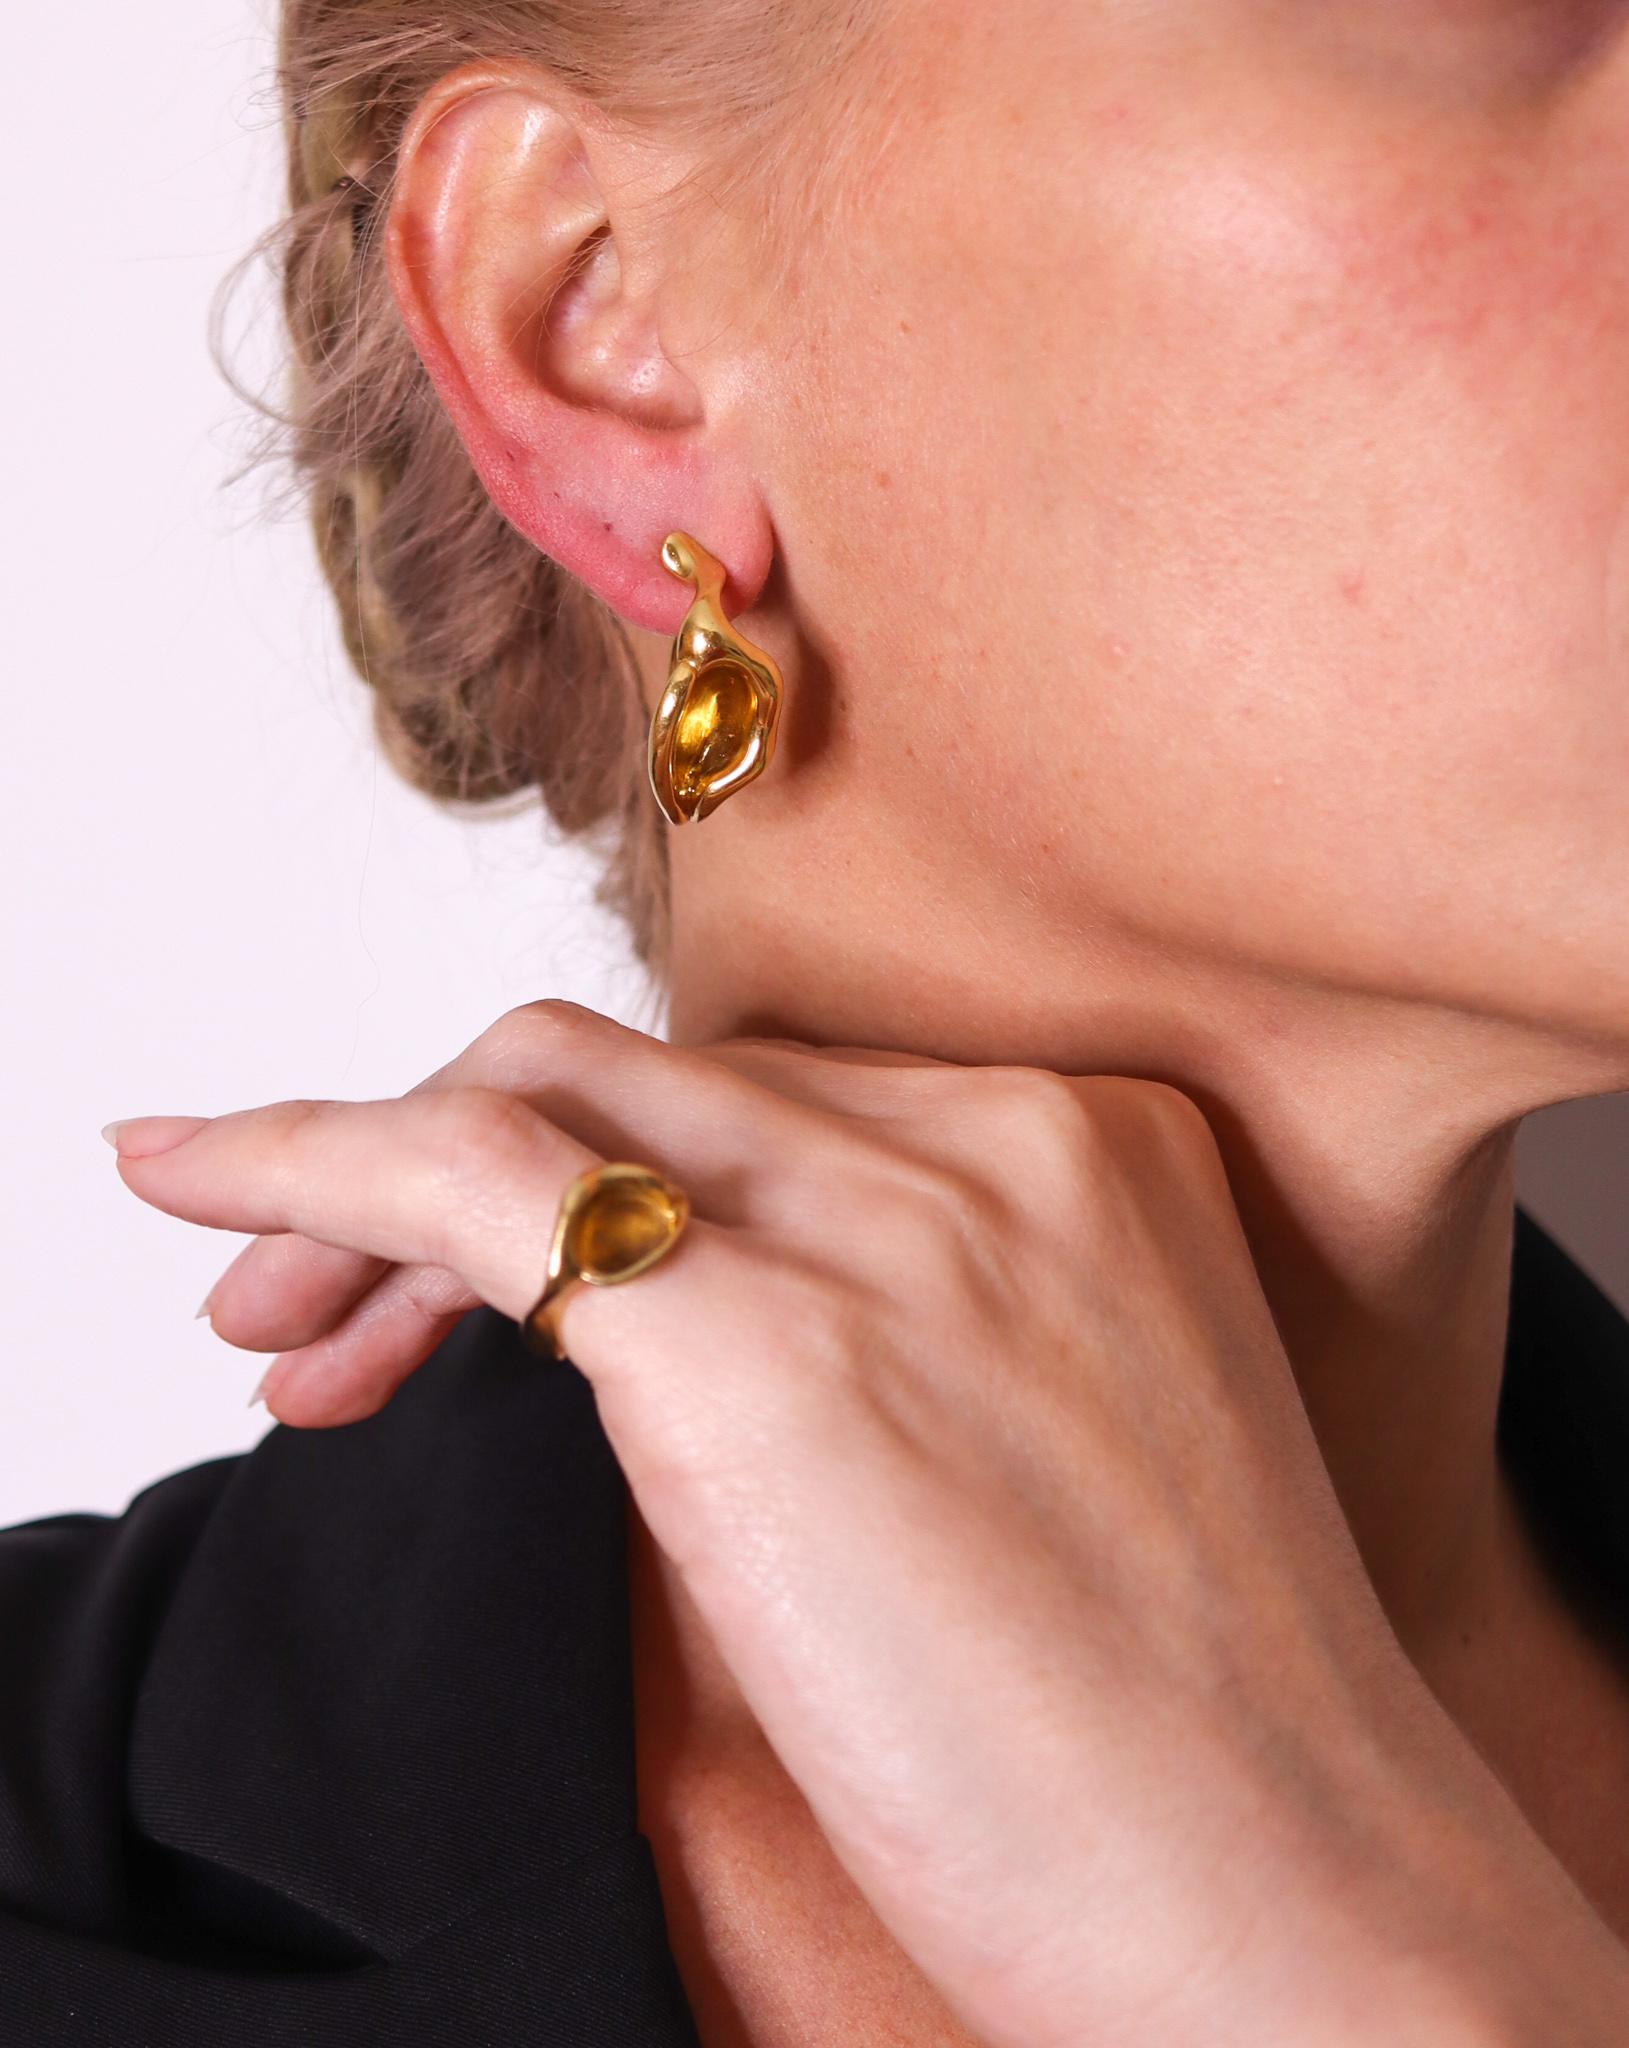 Boucles d'oreilles en forme de lys sculptés créées par Elsa Peretti (1940-2021) pour Tiffany & Co.

Cette paire de boucles d'oreilles sculpturale a été conçue par Peretti pour Tiffany, vers la fin des années 1970. Elles ont été fabriquées en or